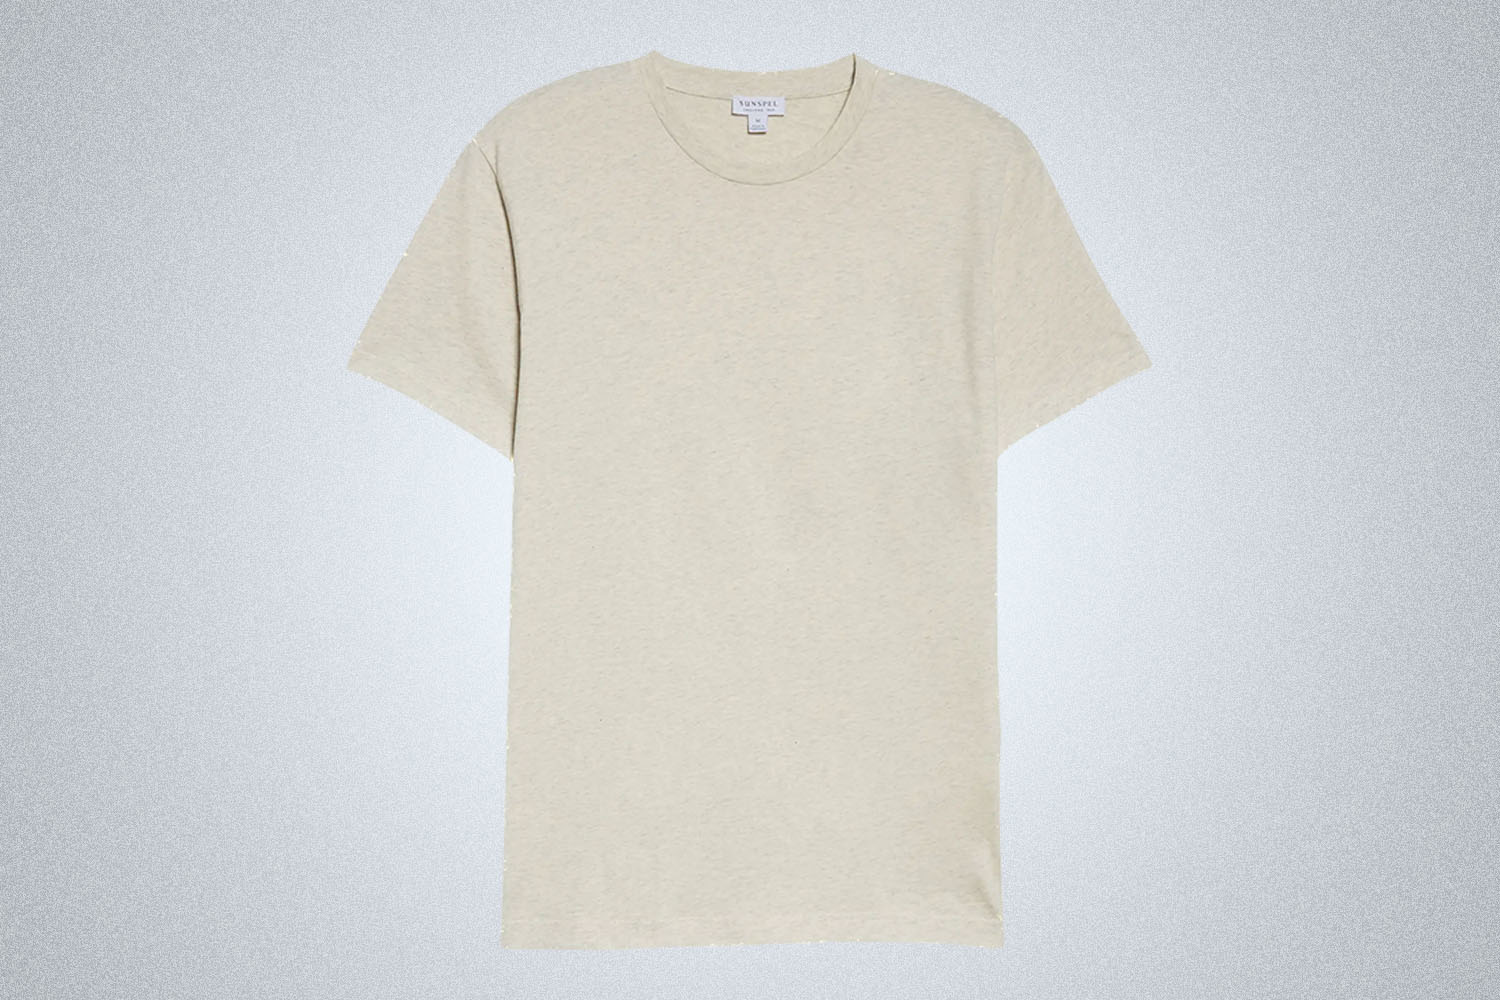 The Best Overall Men's T-Shirt: Sunspel Cotton Crewneck T-Shirt